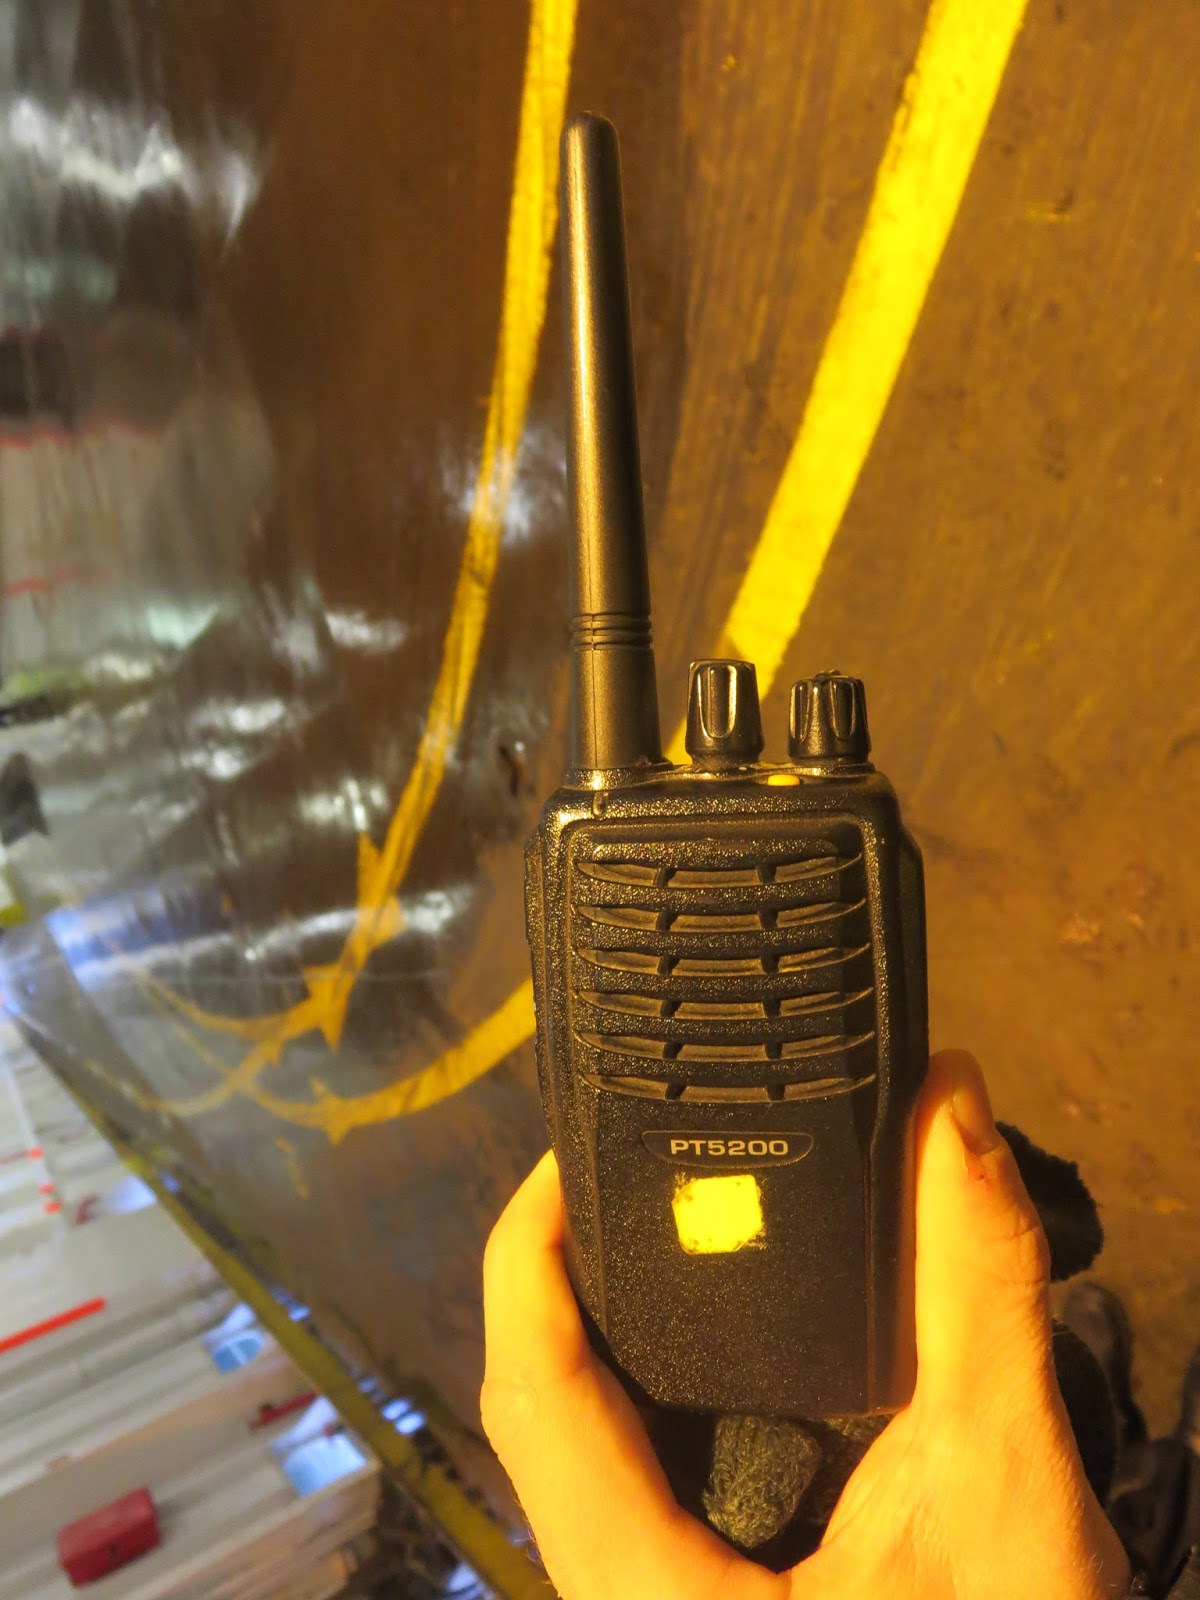 Laivan sisäinen viestintä sekä viestintä satamissa lastauksen aikana ahtausfirman ja varustamon henkilökunnan kanssa hoituu UHF17-radiopuhelimien välityksellä. UHF-taajuutta käyttävät radiopuhelimet ovat kevyitä, mukana kannettavia laitteita.